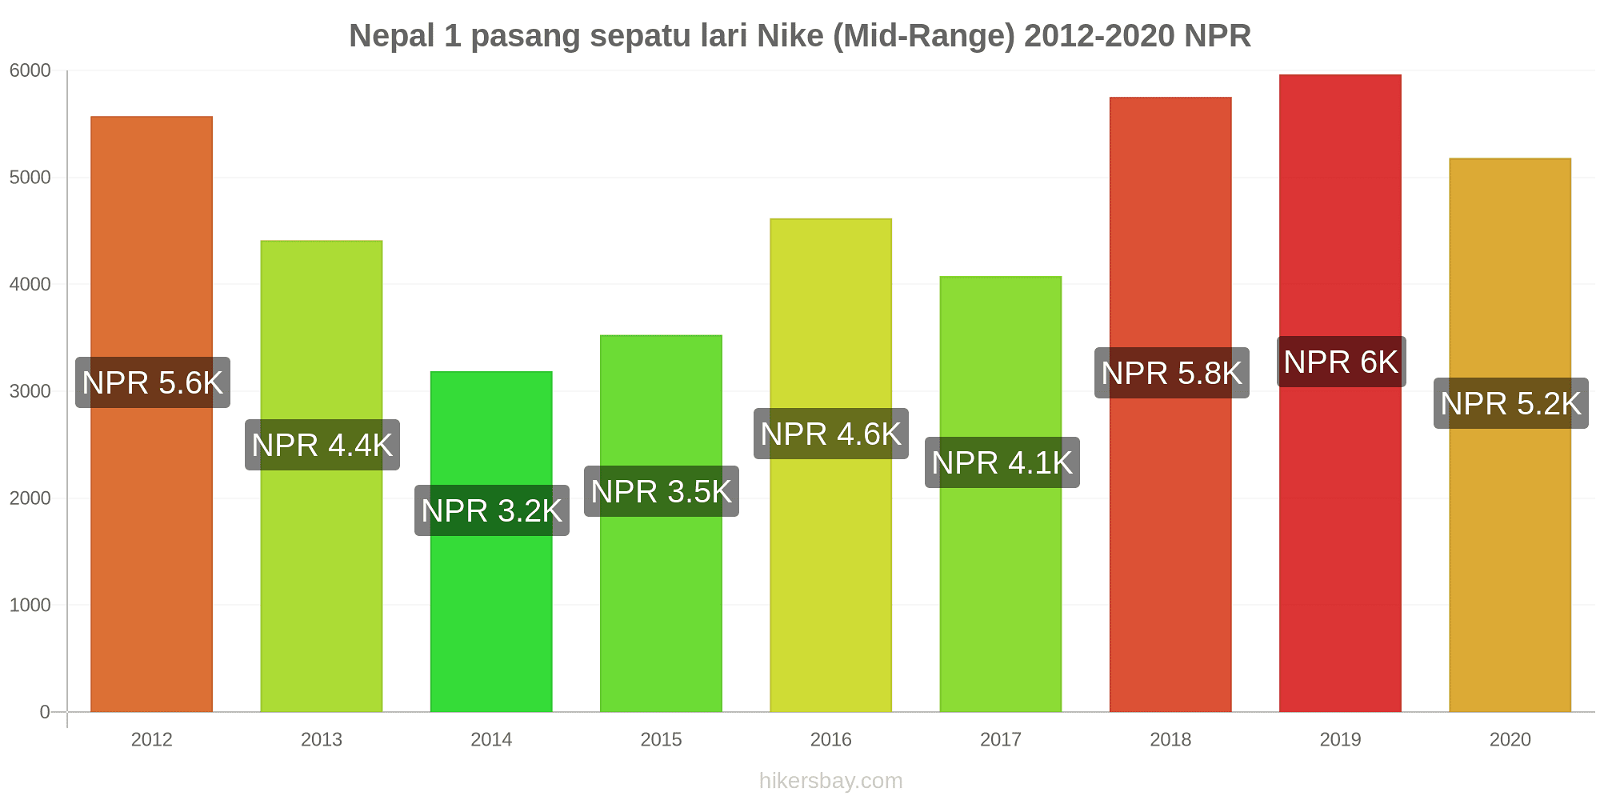 Nepal perubahan harga 1 pasang sepatu lari Nike (Mid-Range) hikersbay.com